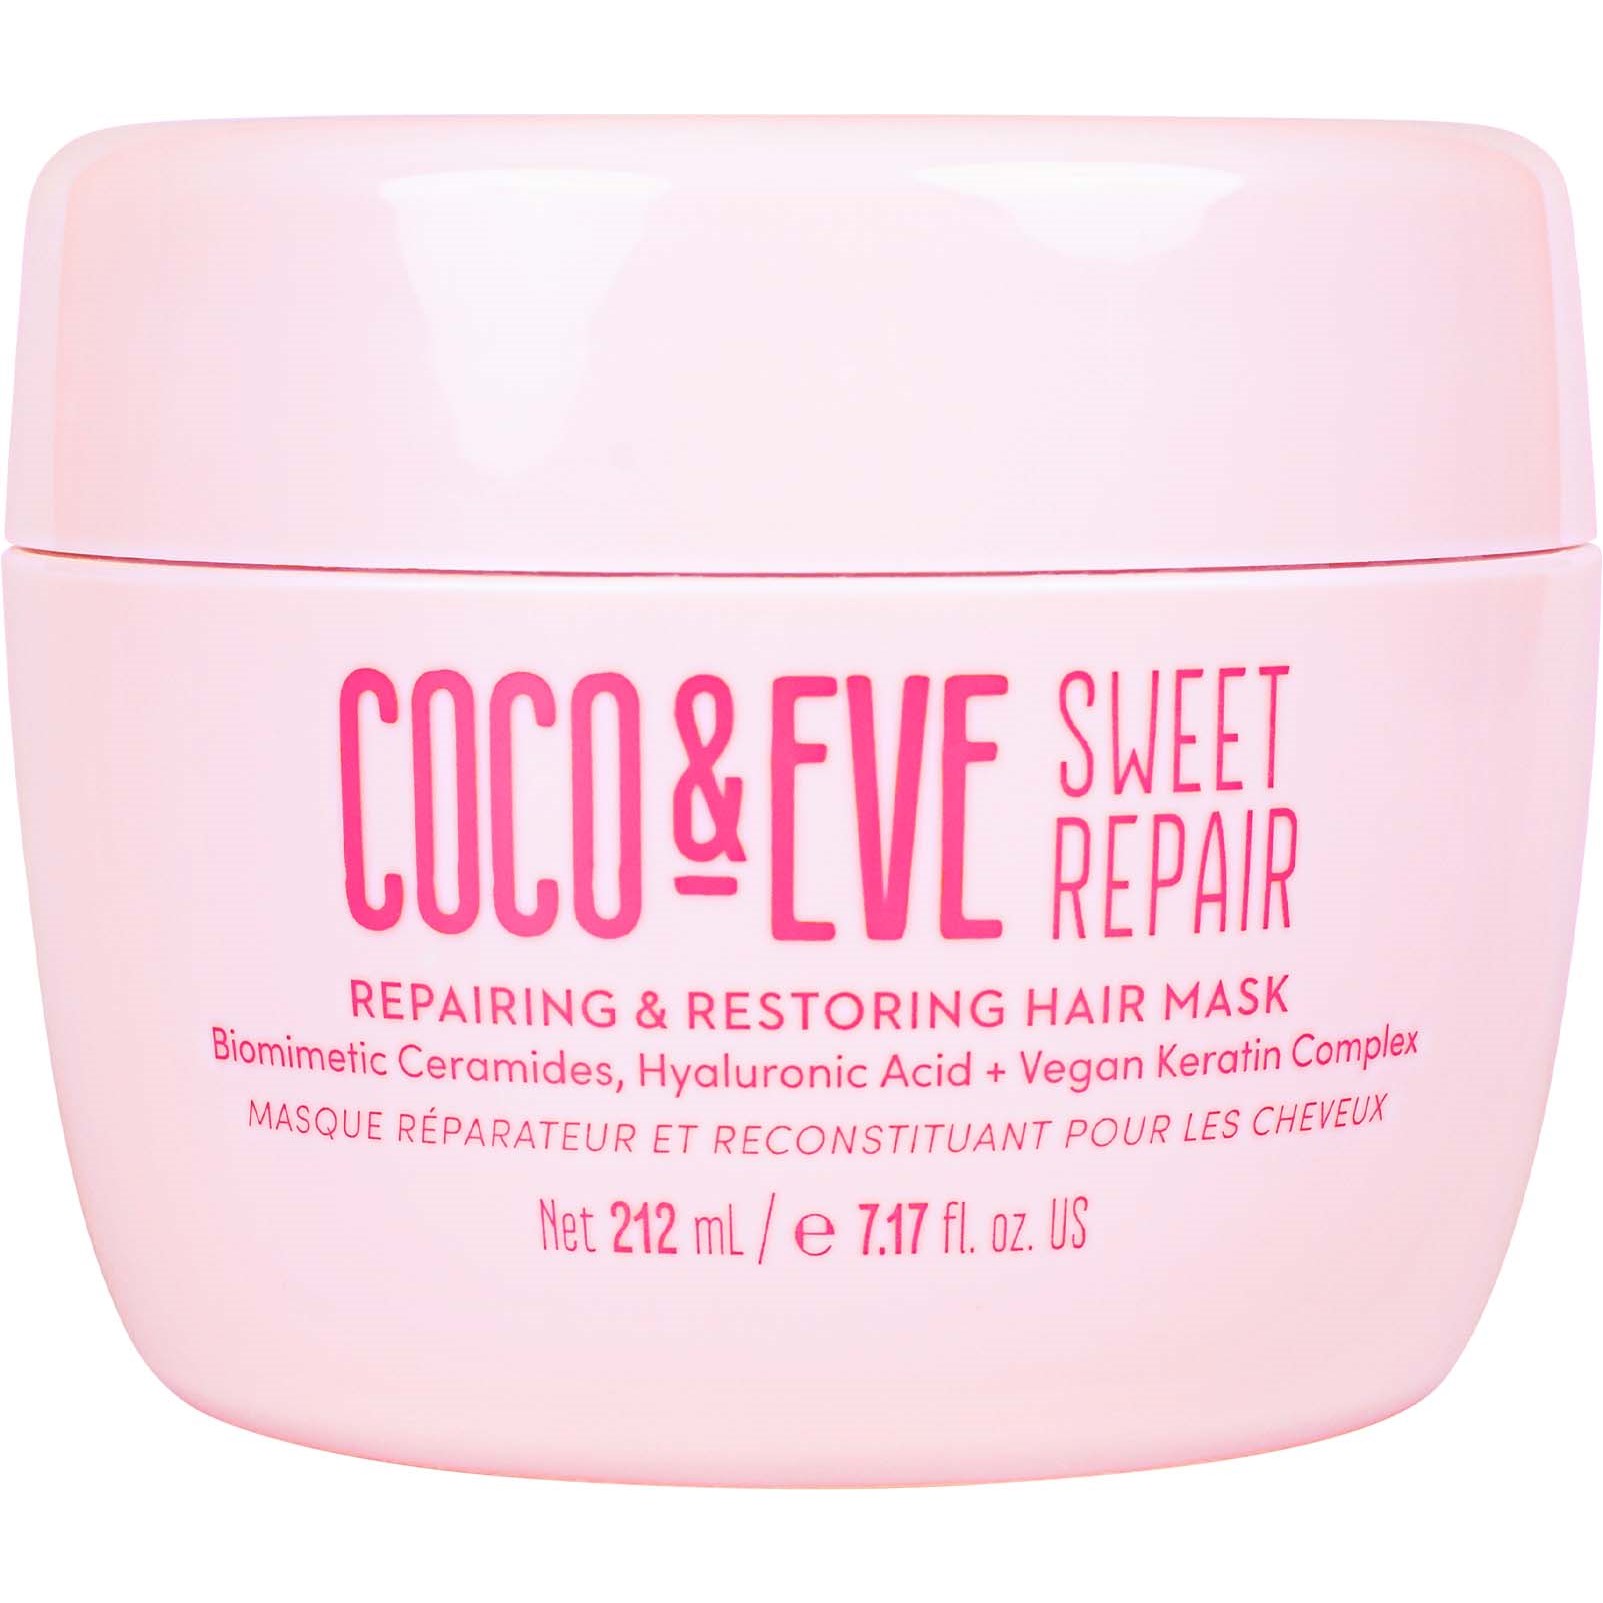 Coco & Eve Sweet Repair Repair Repairing & Restoring Hair Masque